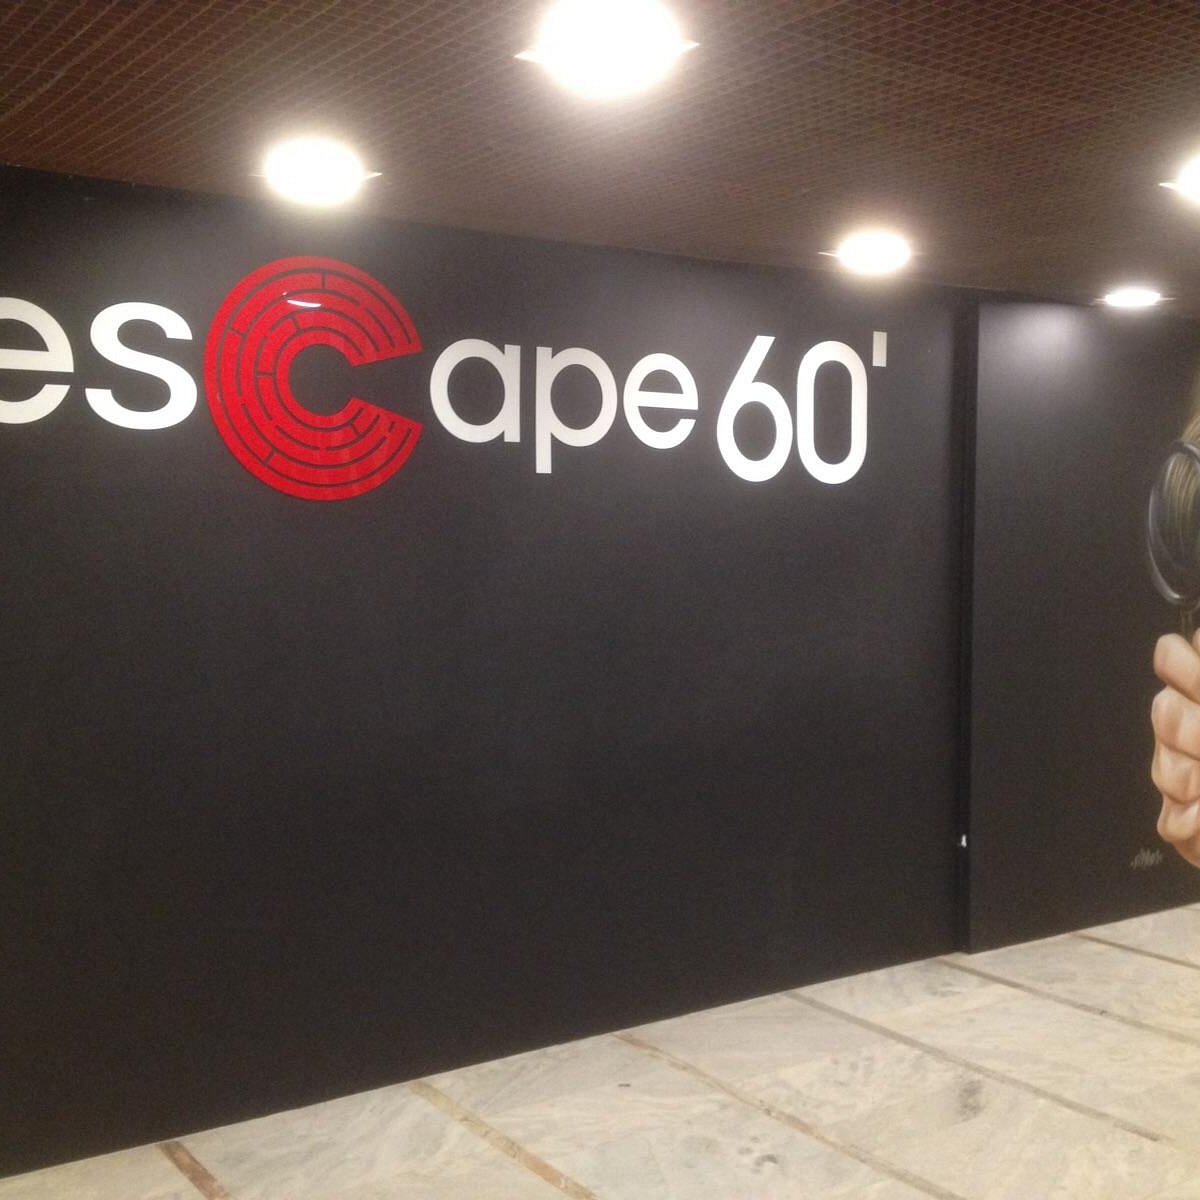 Jogo de escape: como é brincar na sala Vila do Chaves do Escape 60